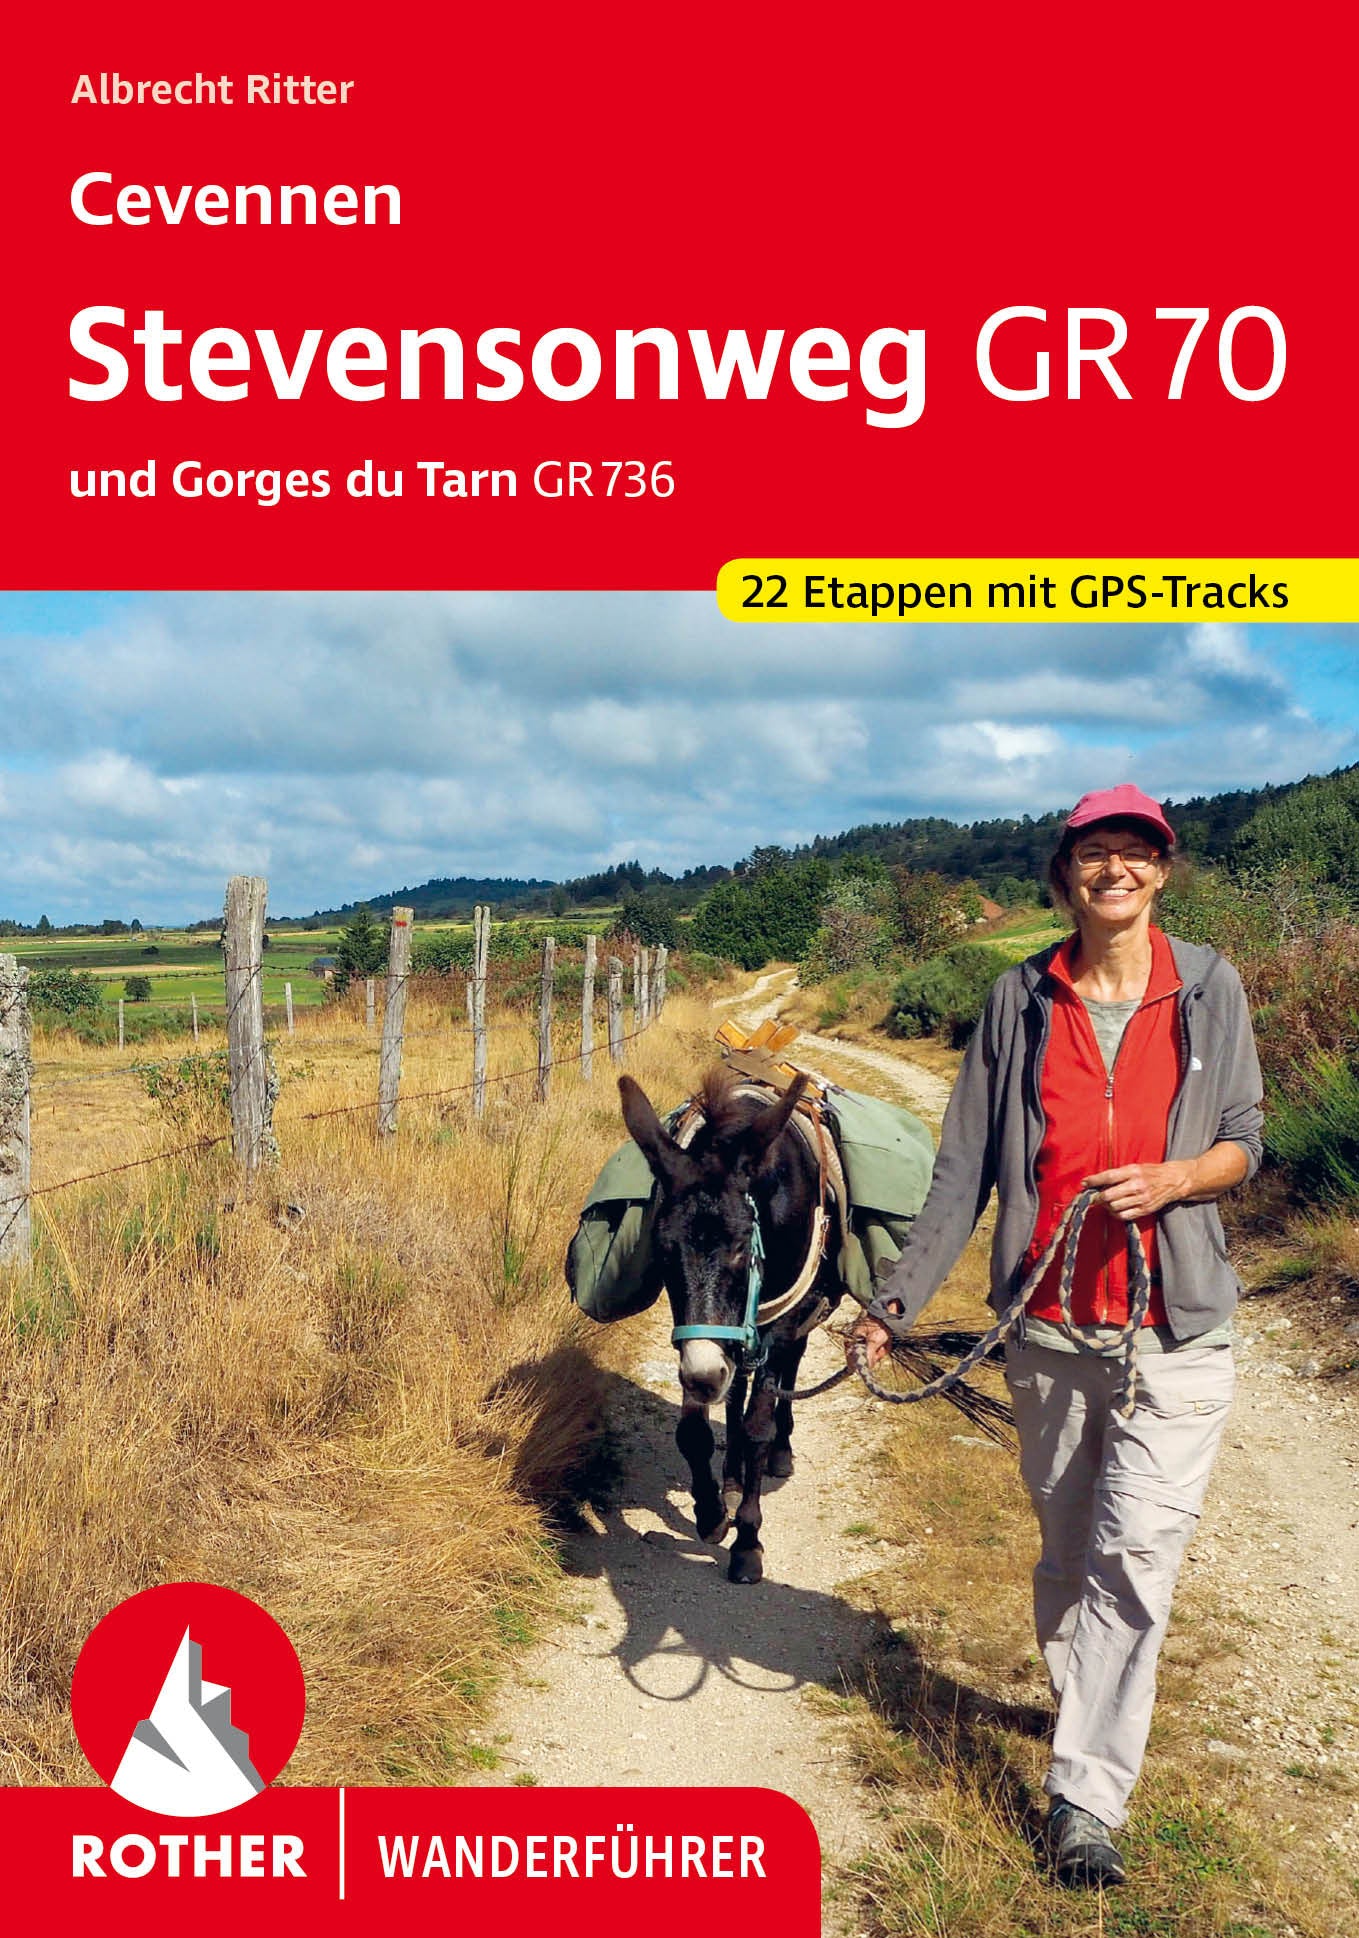 Cevennen: Stevensonweg GR 70 - Wanderführer